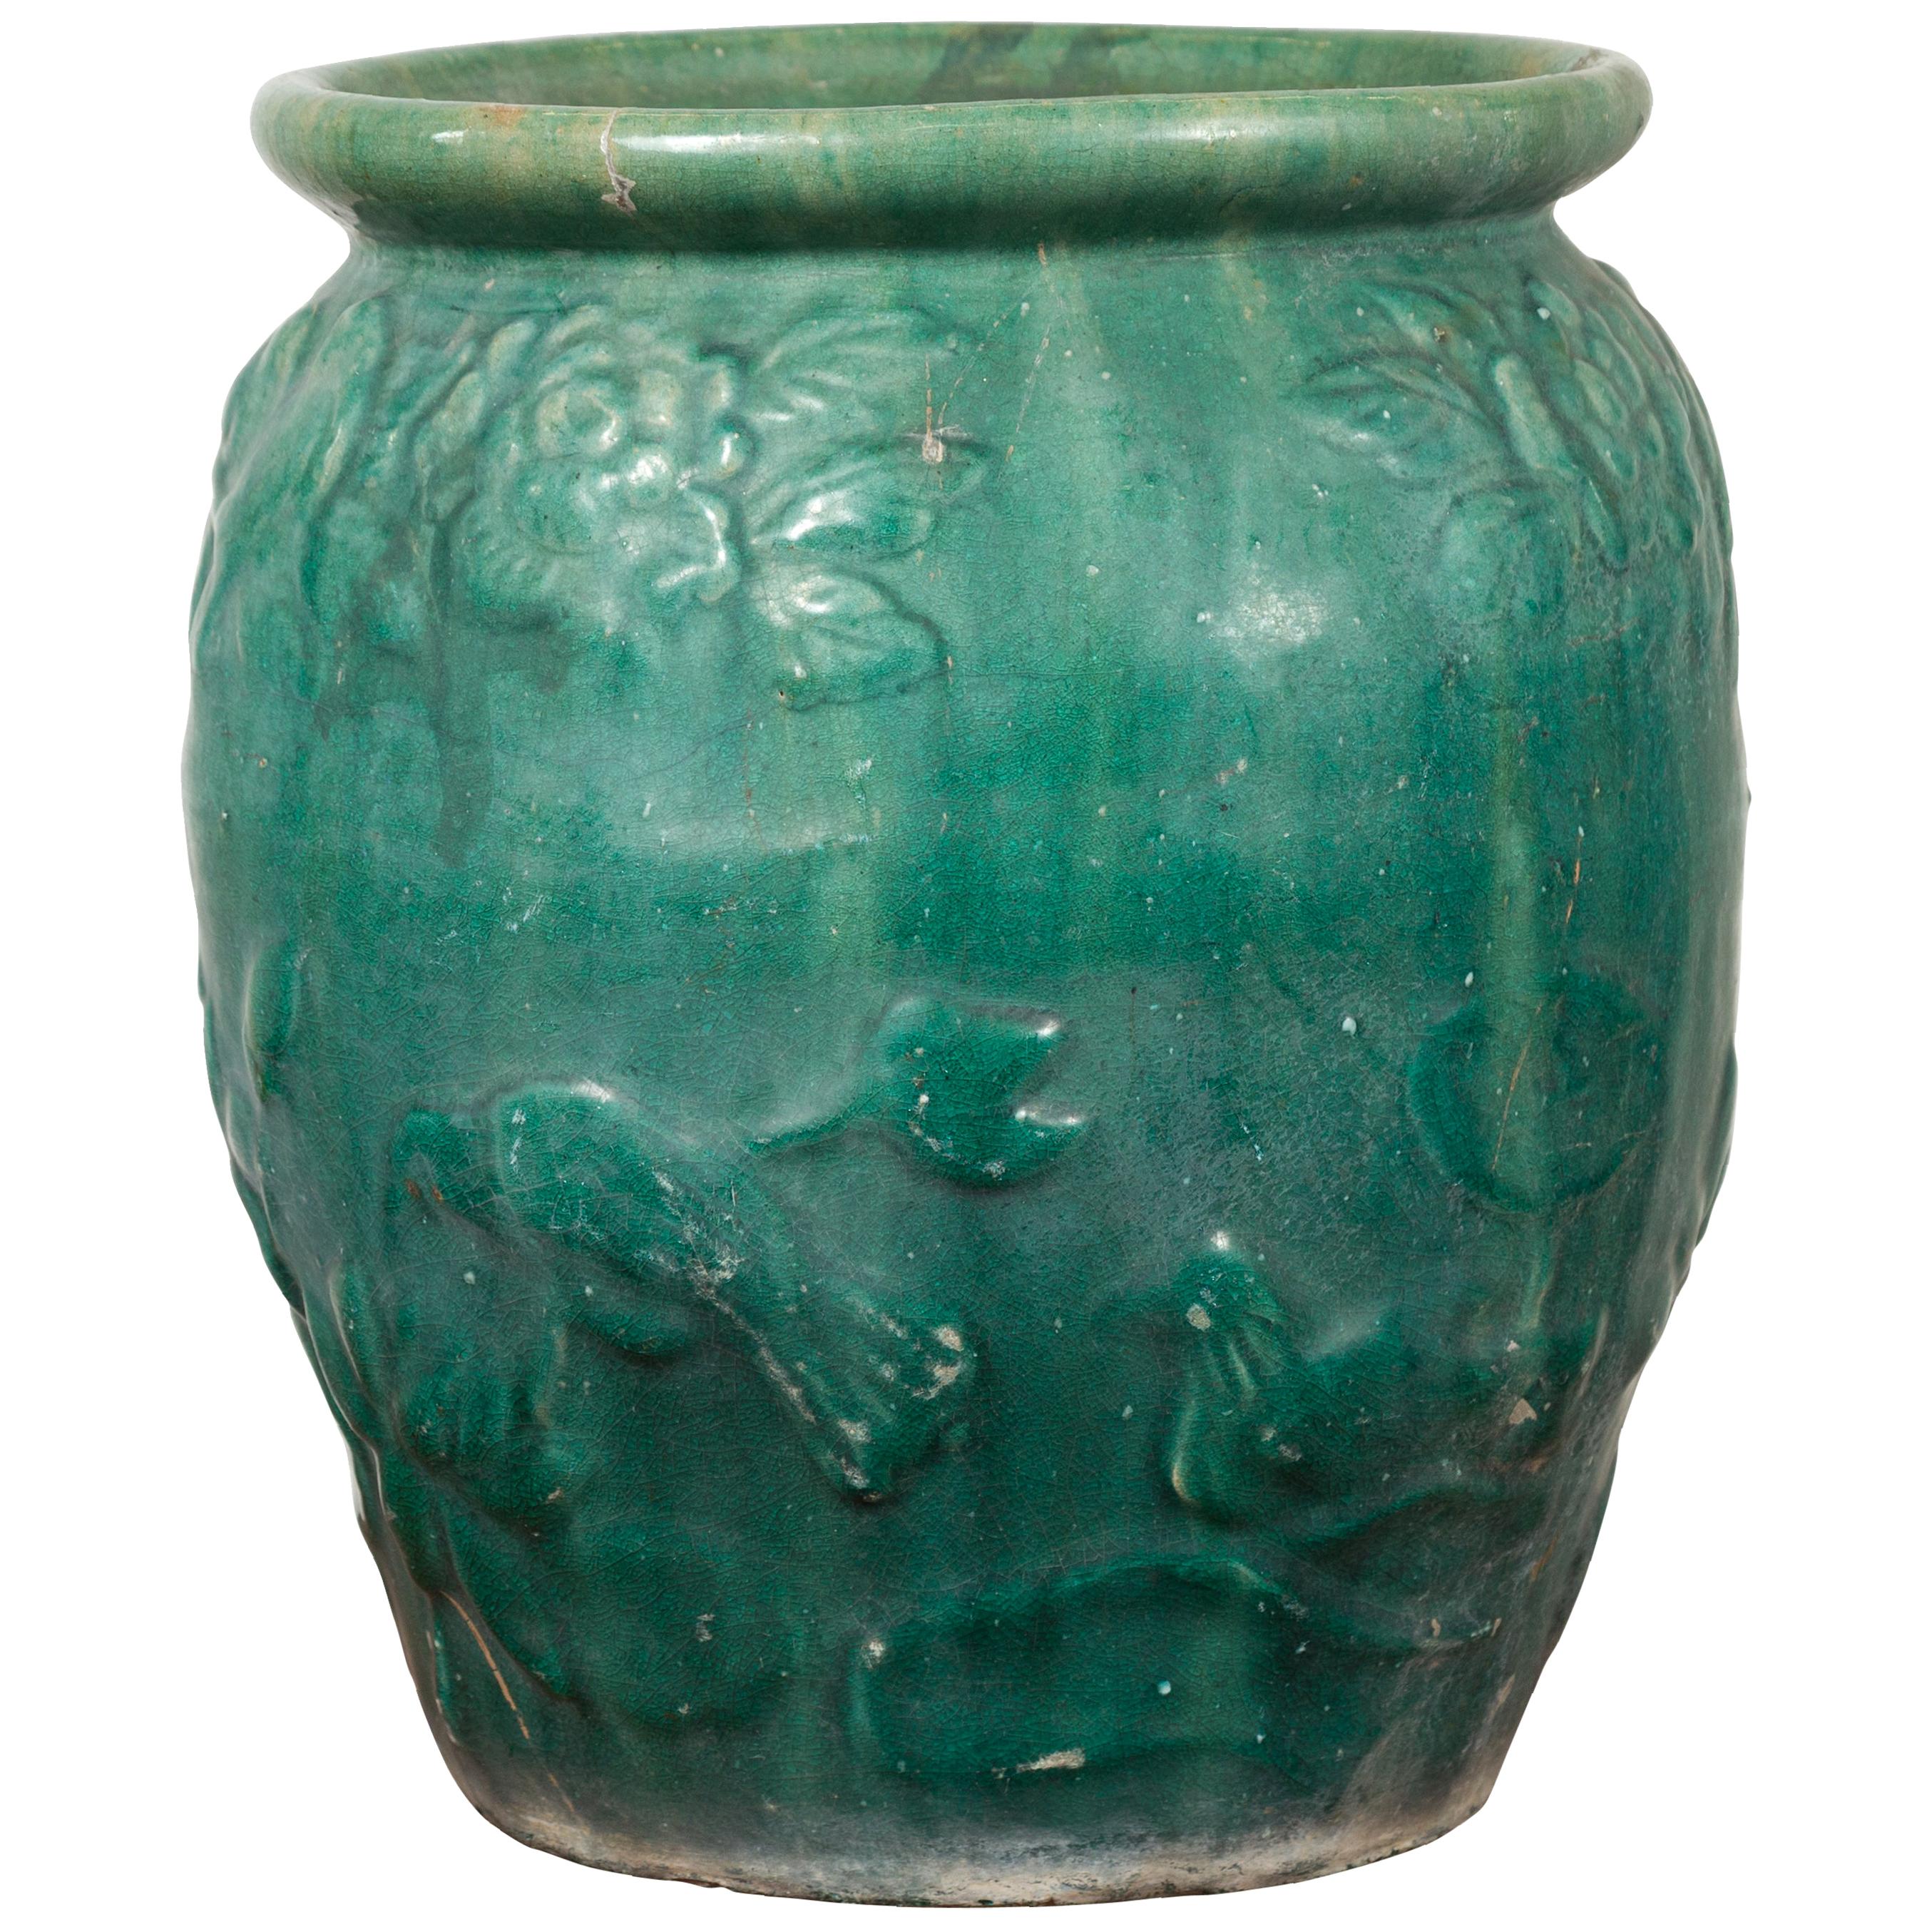 Chinesische grüne glasierte Vintage-Vase mit erhabenen Blumen- und Vogelmotiven aus China